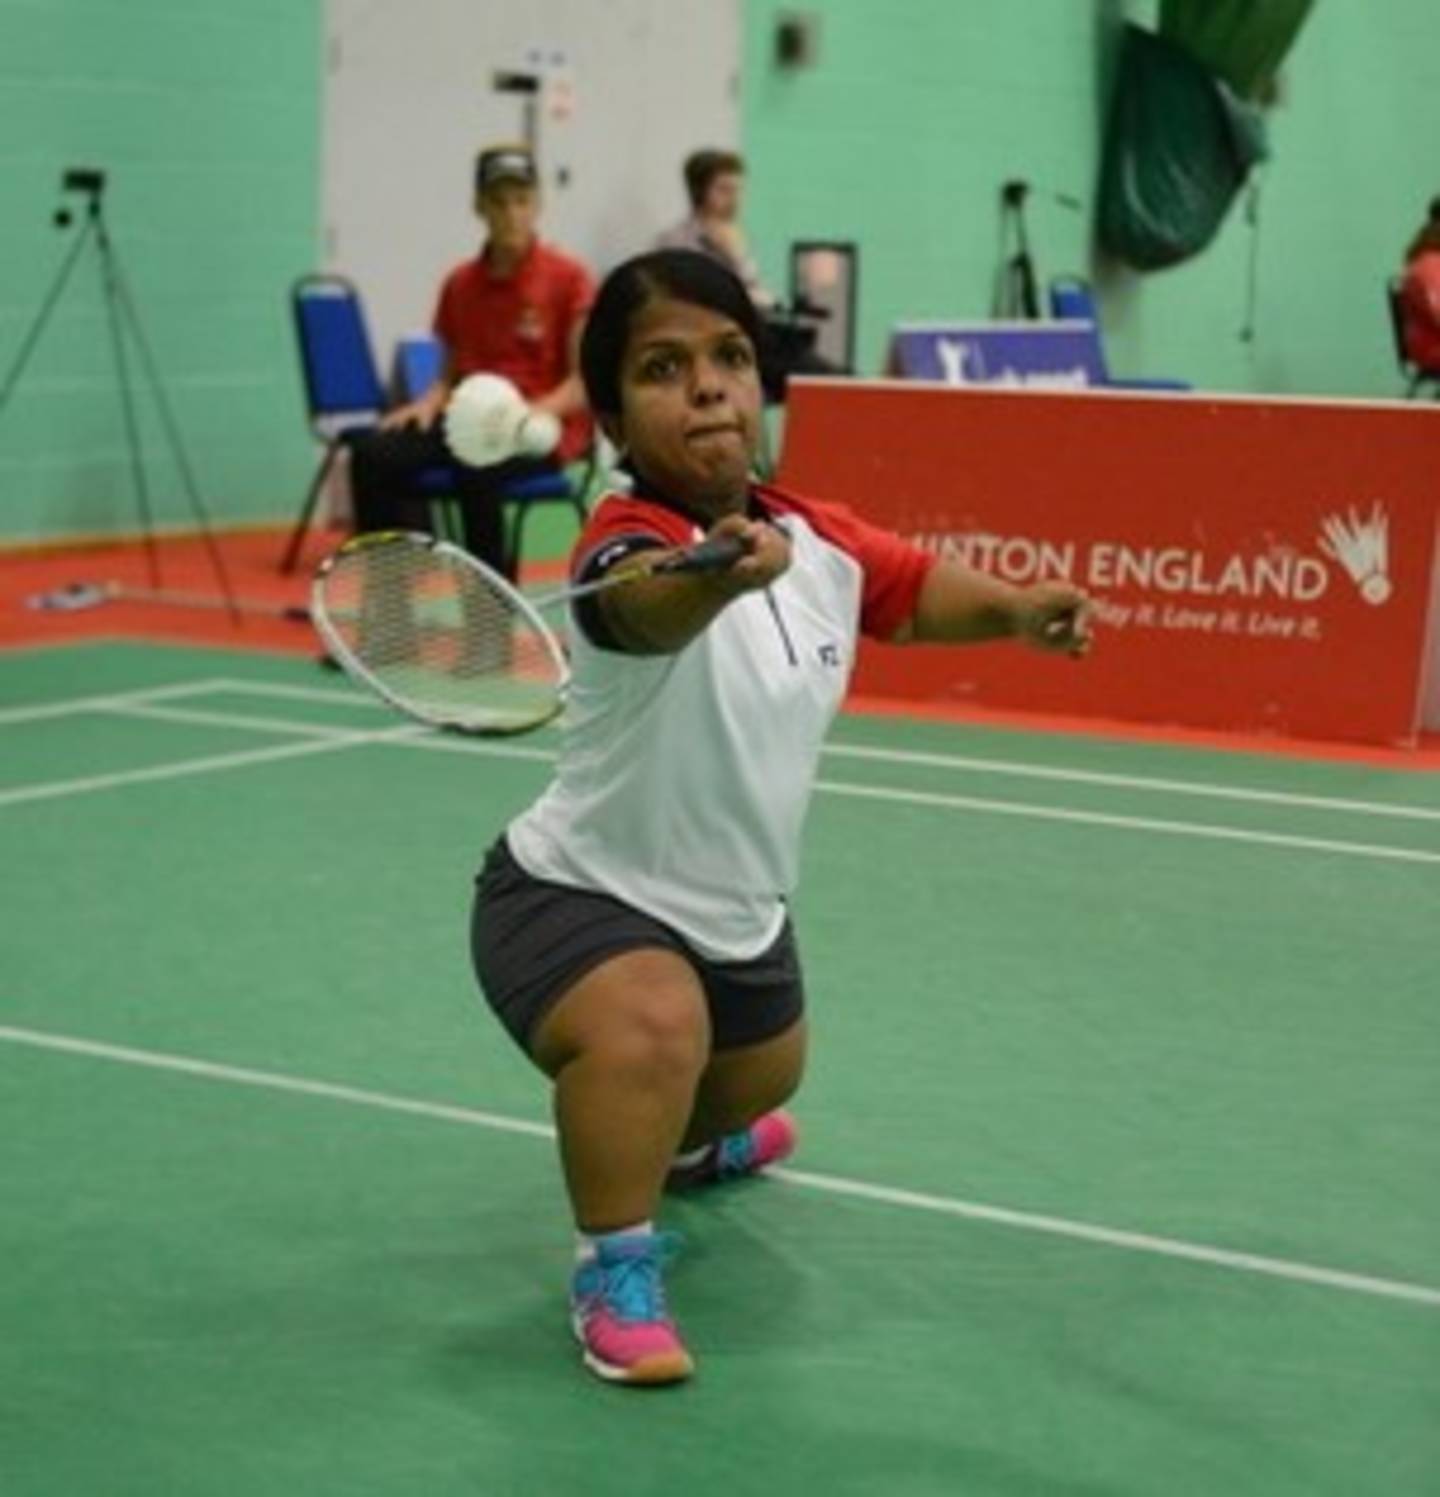 Image shows Randika playing badminton